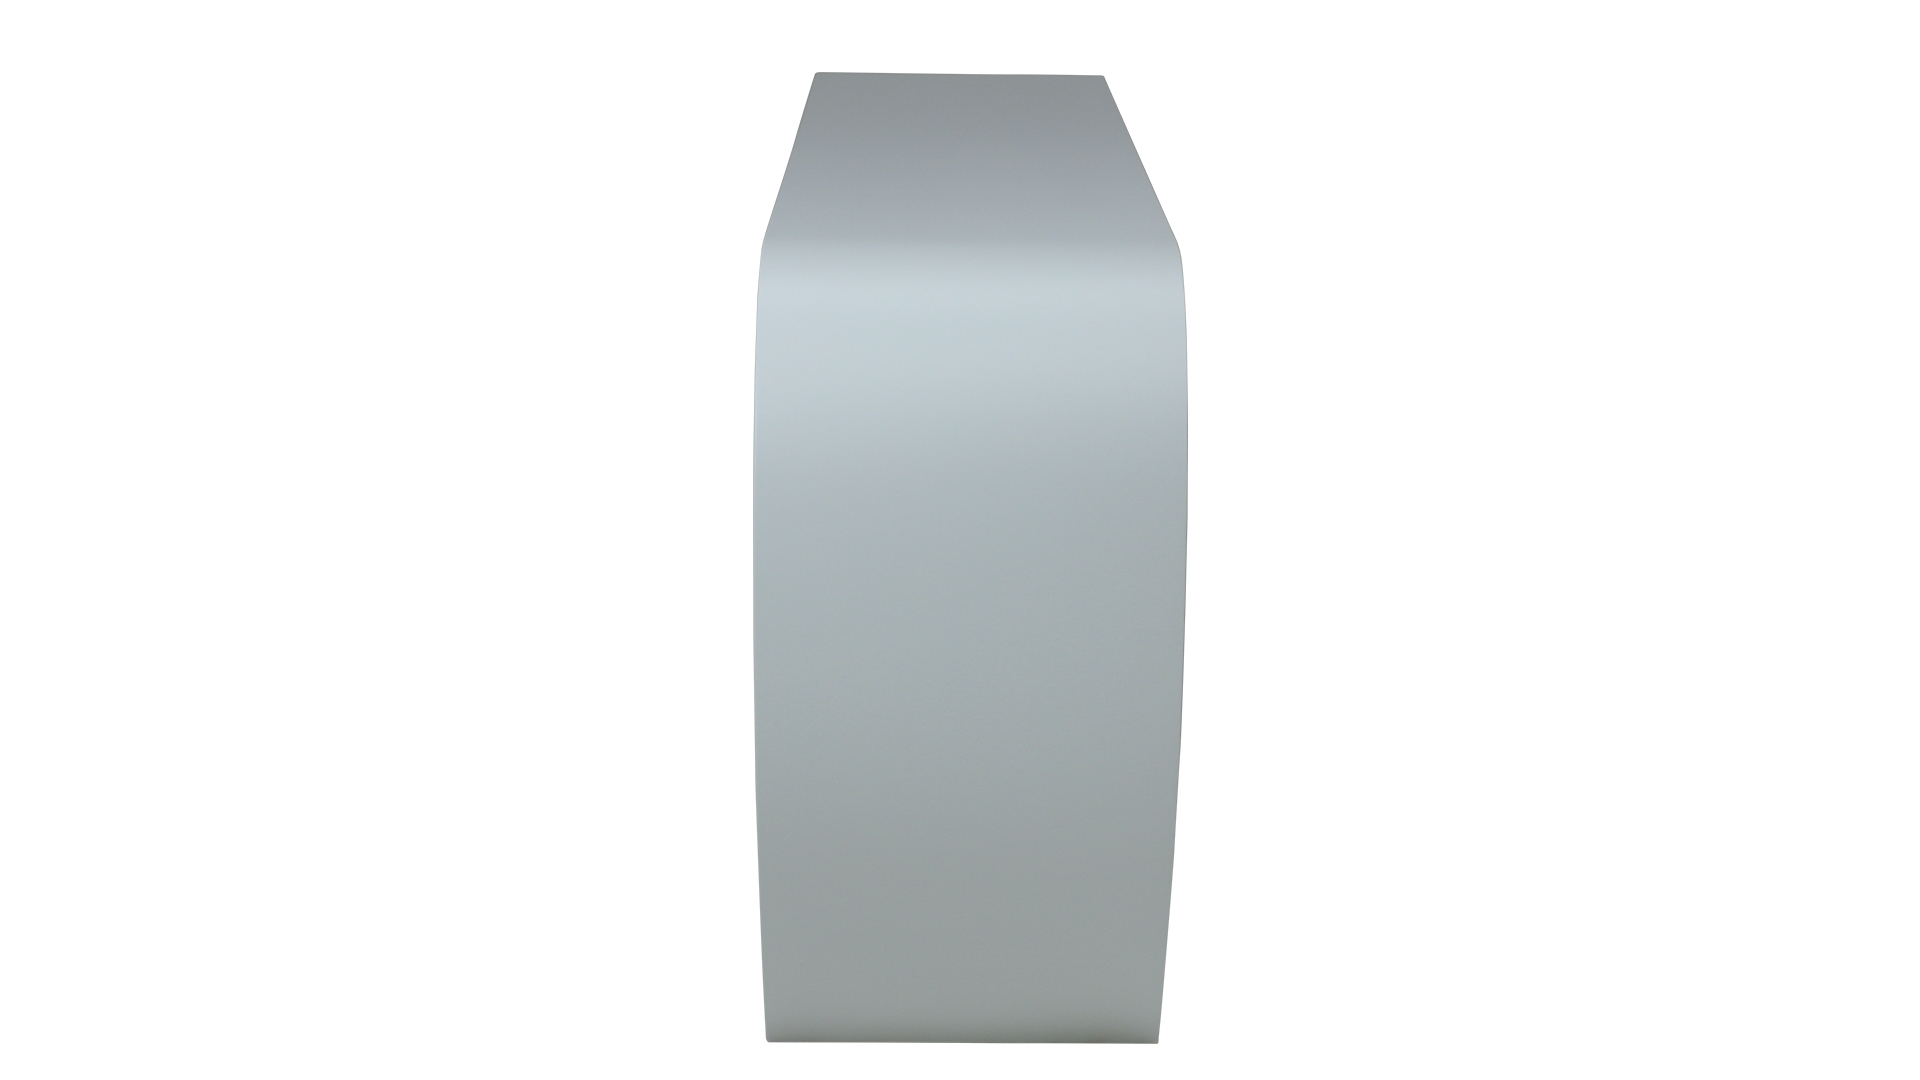 Das Sideboard Sidebow überzeugt mit seiner besonderen Form. Gefertigt wurde das Sideboard aus Echtholzfurnier. Die Farbe ist Weiß. Es ist ein Produkt der Marke Jan Kurtz und hat eine Breite von 168 cm.